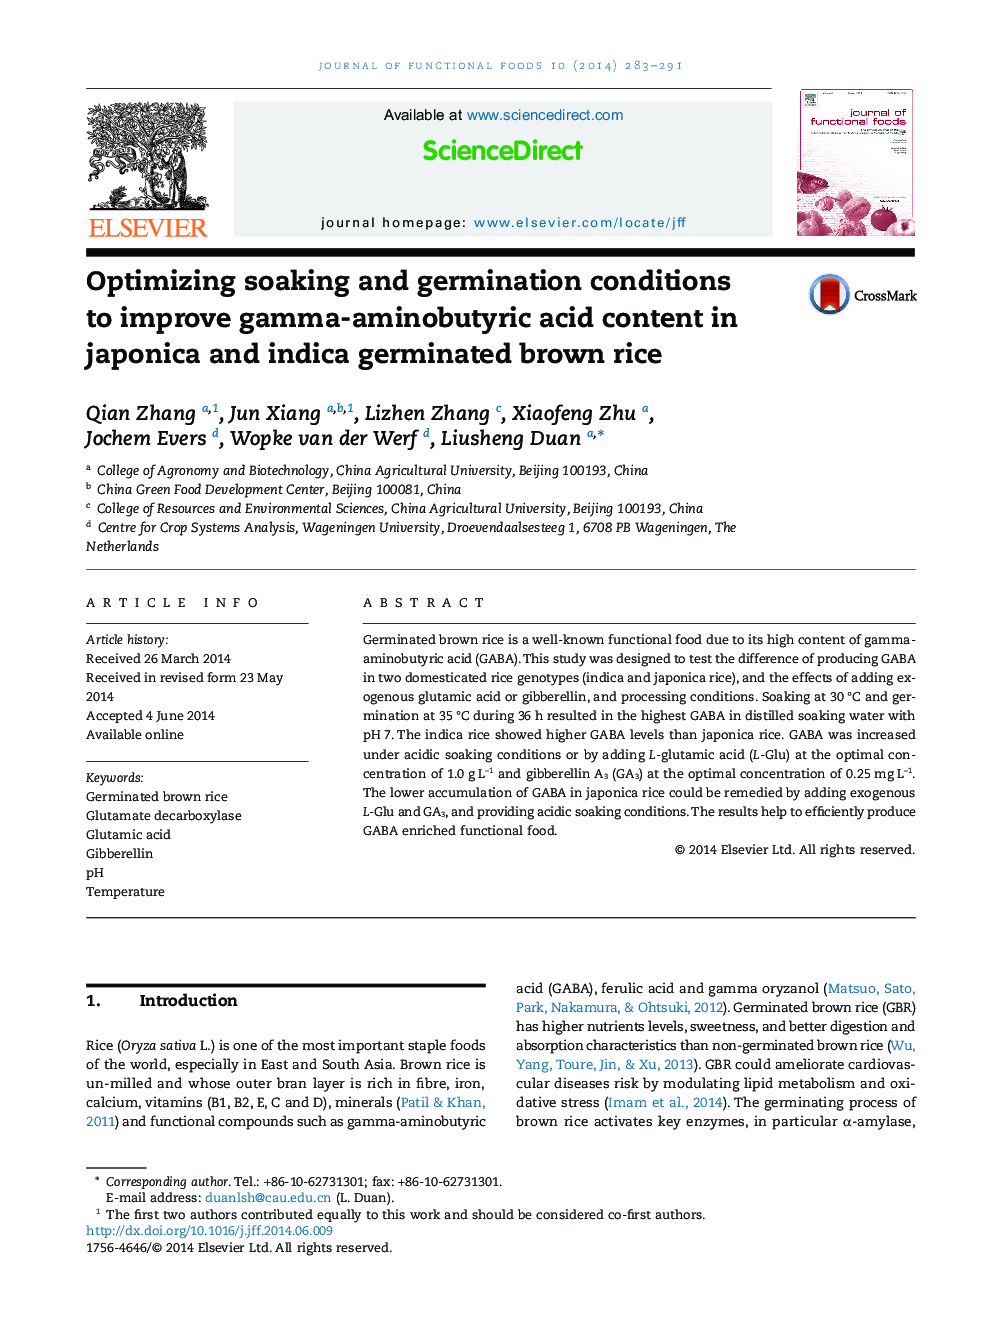 بهینه سازی شرایط خیساندن و جوانه زدن برای بهبود اسید گاما آمینو بوتیریک در جوپناک و اندیکا برنج قهوه ای جوانه زده 